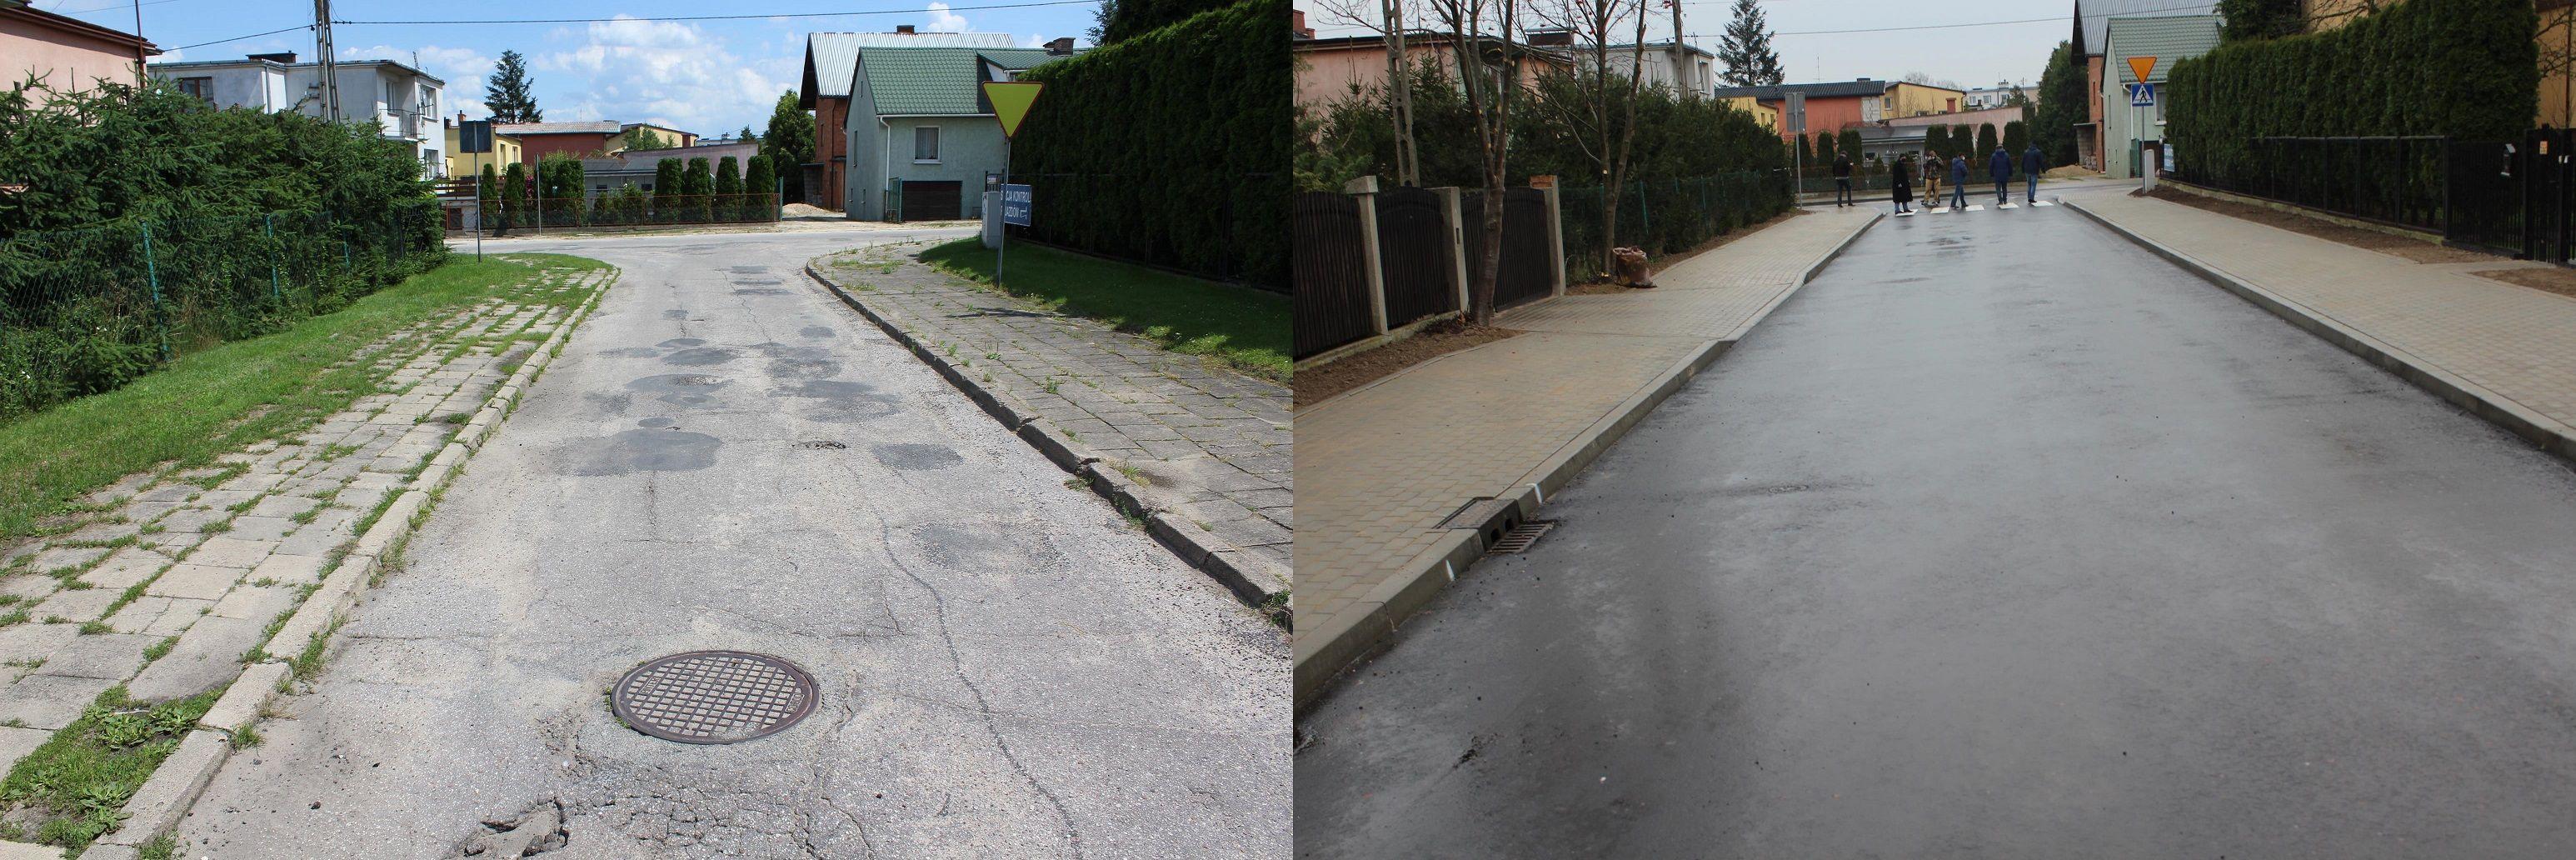 Przebudowa ulicy Tulipanowej - stan przed i po remoncie - kliknięcie spowoduje powiększenie